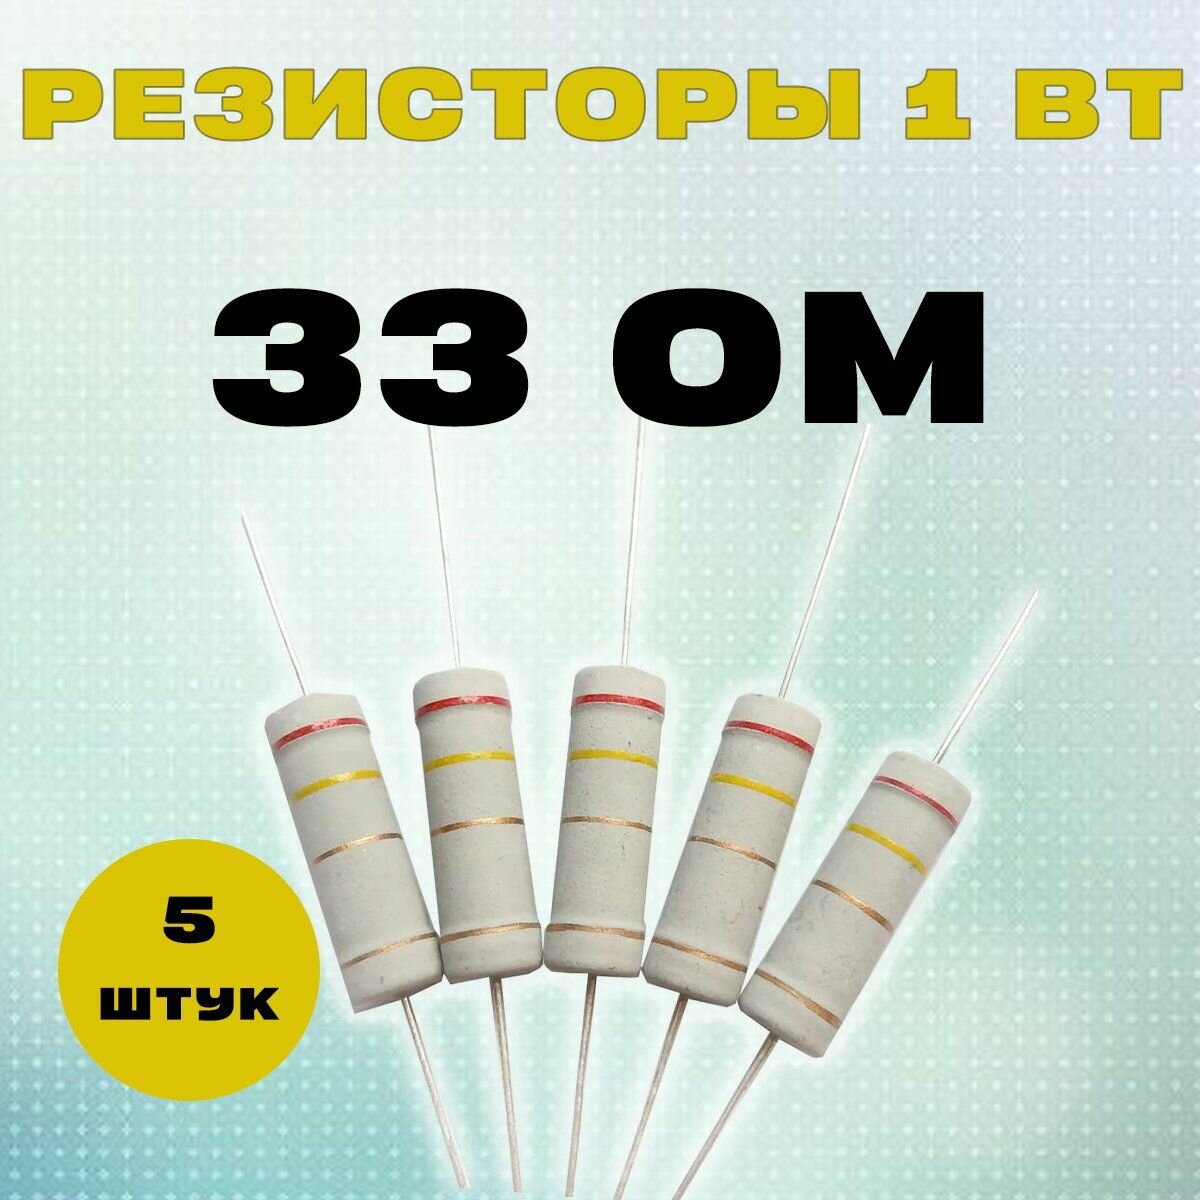 Резистор 1W 33R Om - 1 Вт 33 Ом